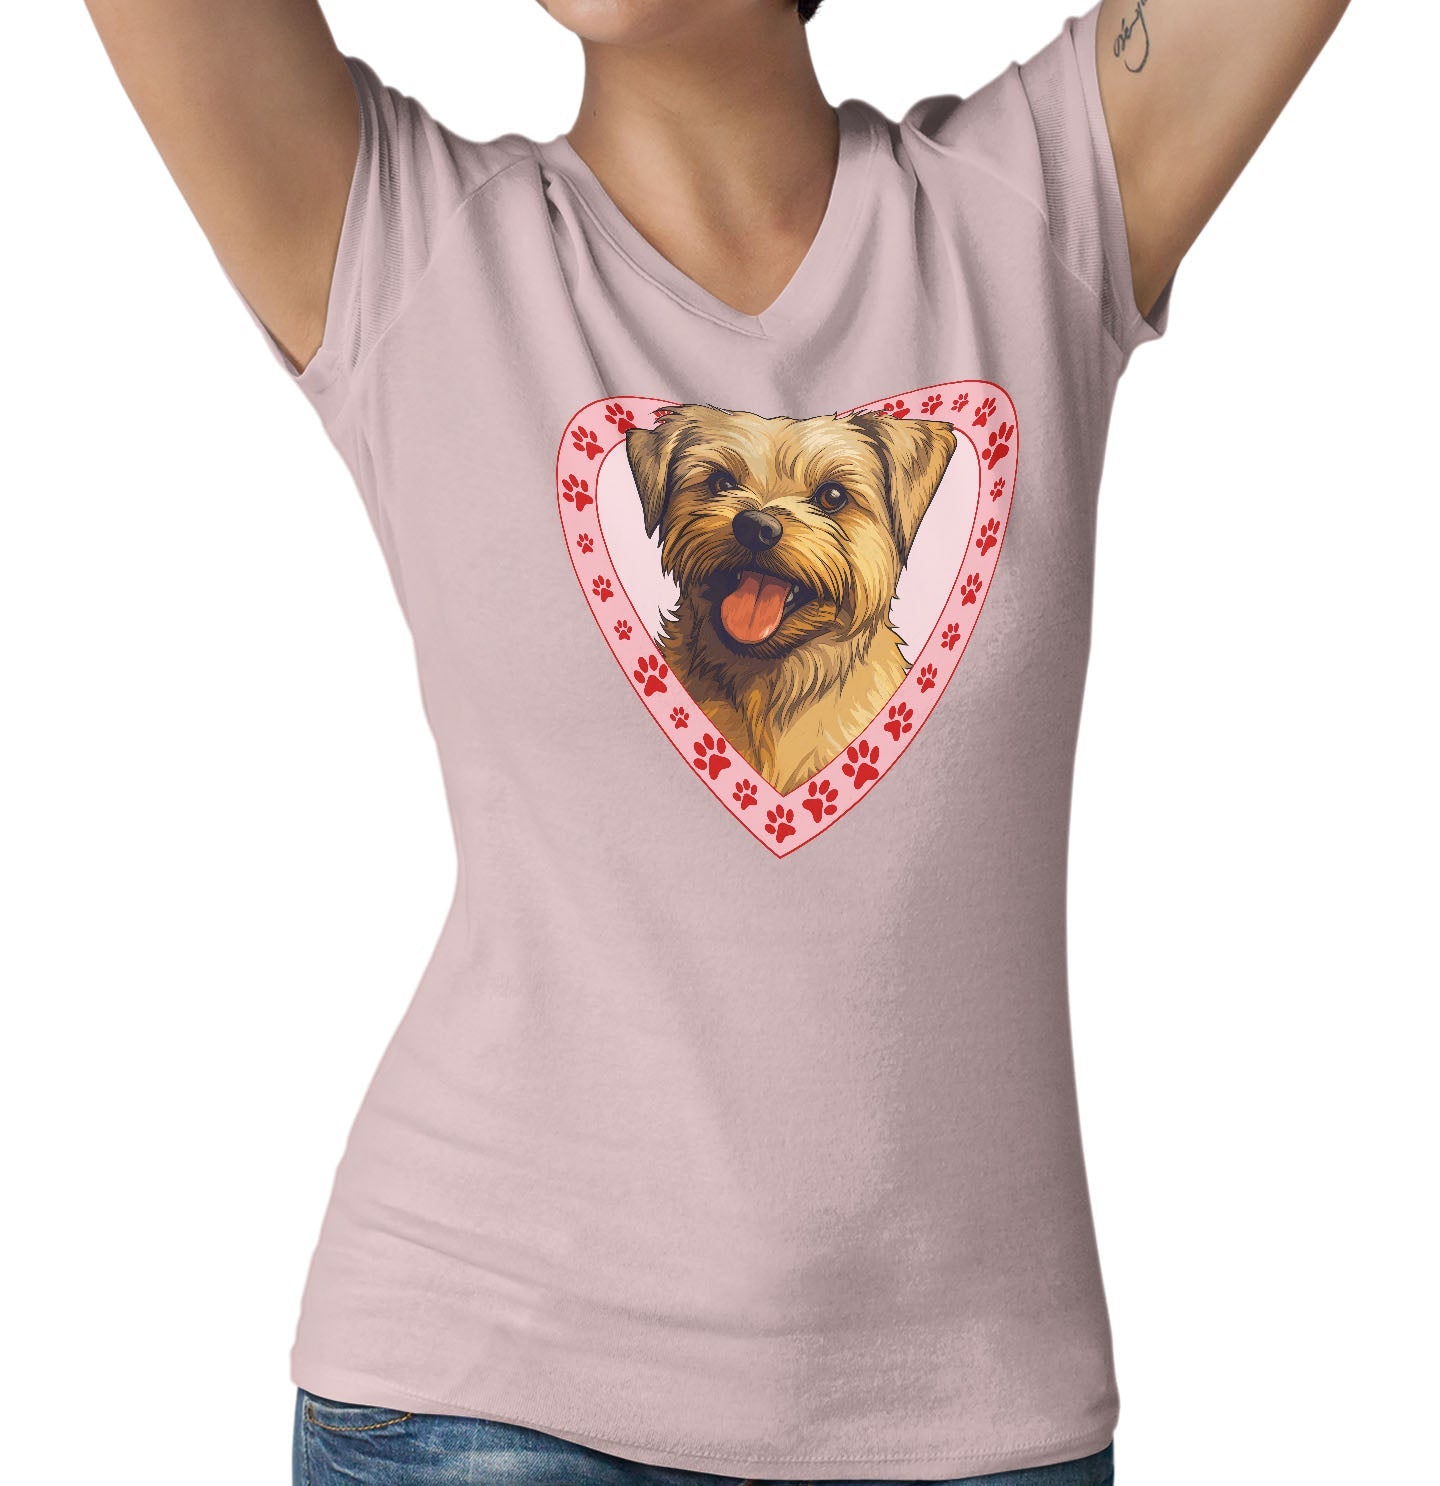 Norfolk Terrier Illustration In Heart - Women's V-Neck T-Shirt